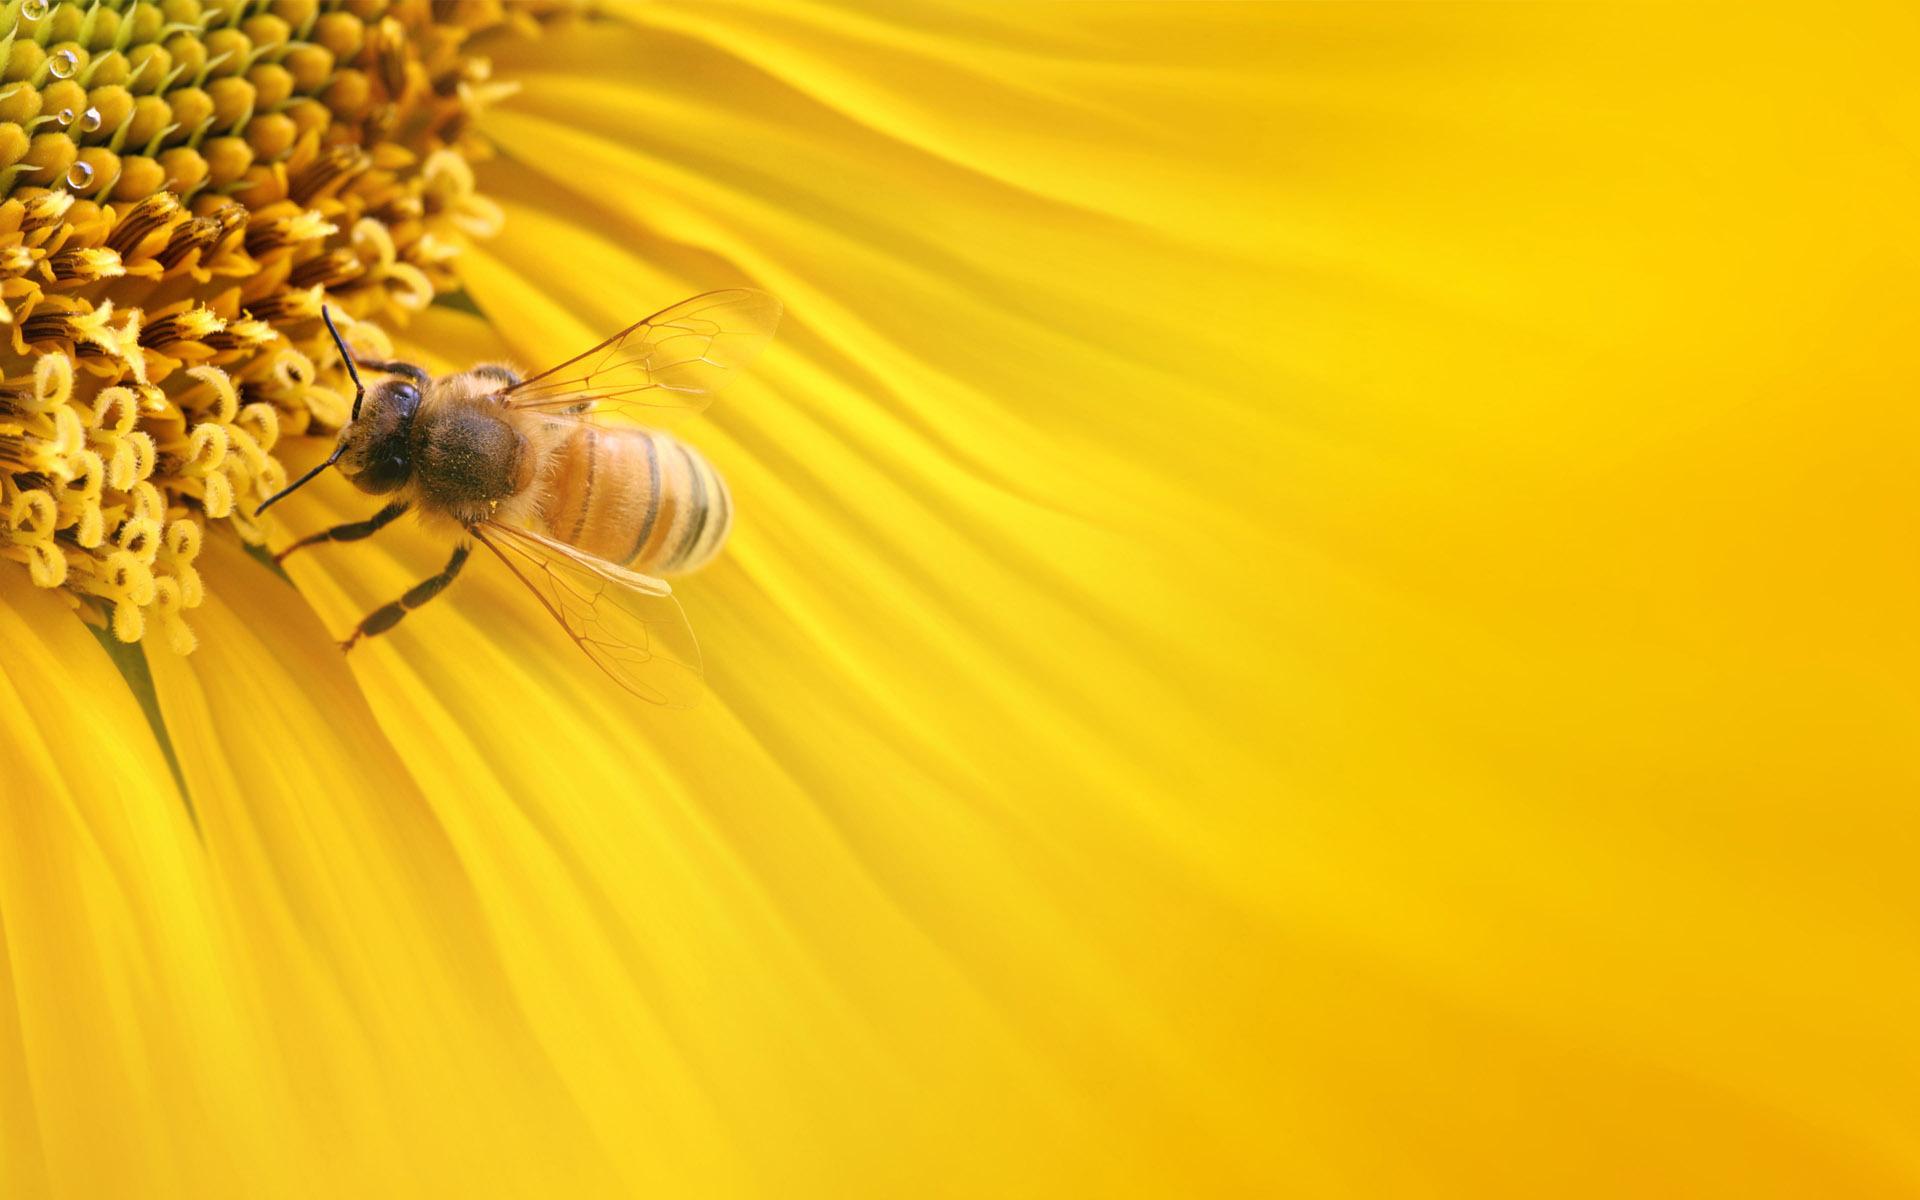 Honeybee Wallpaper. Honeybee Wallpaper